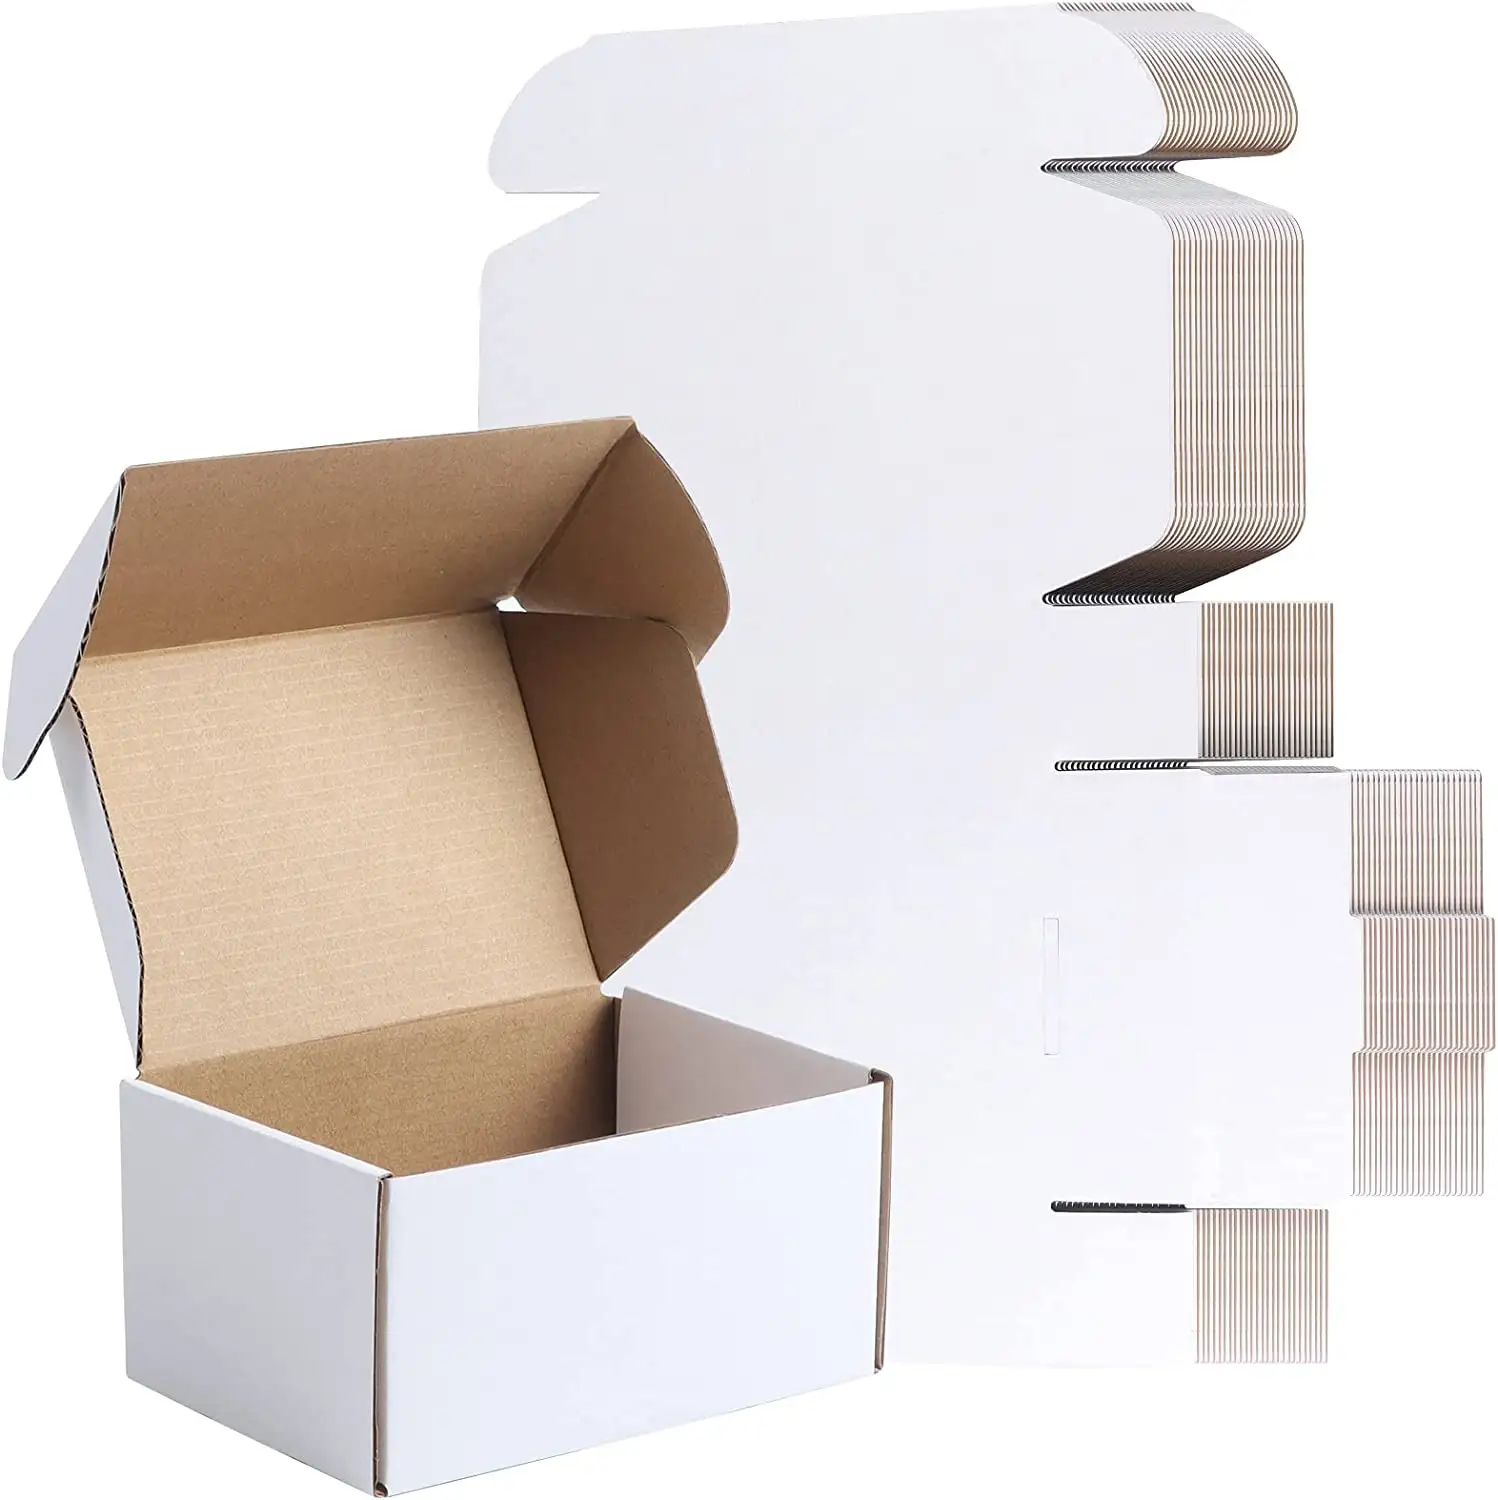 Индивидуальные гофрированные коробки для бизнеса, маленькая картонная подарочная коробка для отправки по почте, доставка по электронной коммерции, Упаковка подарков